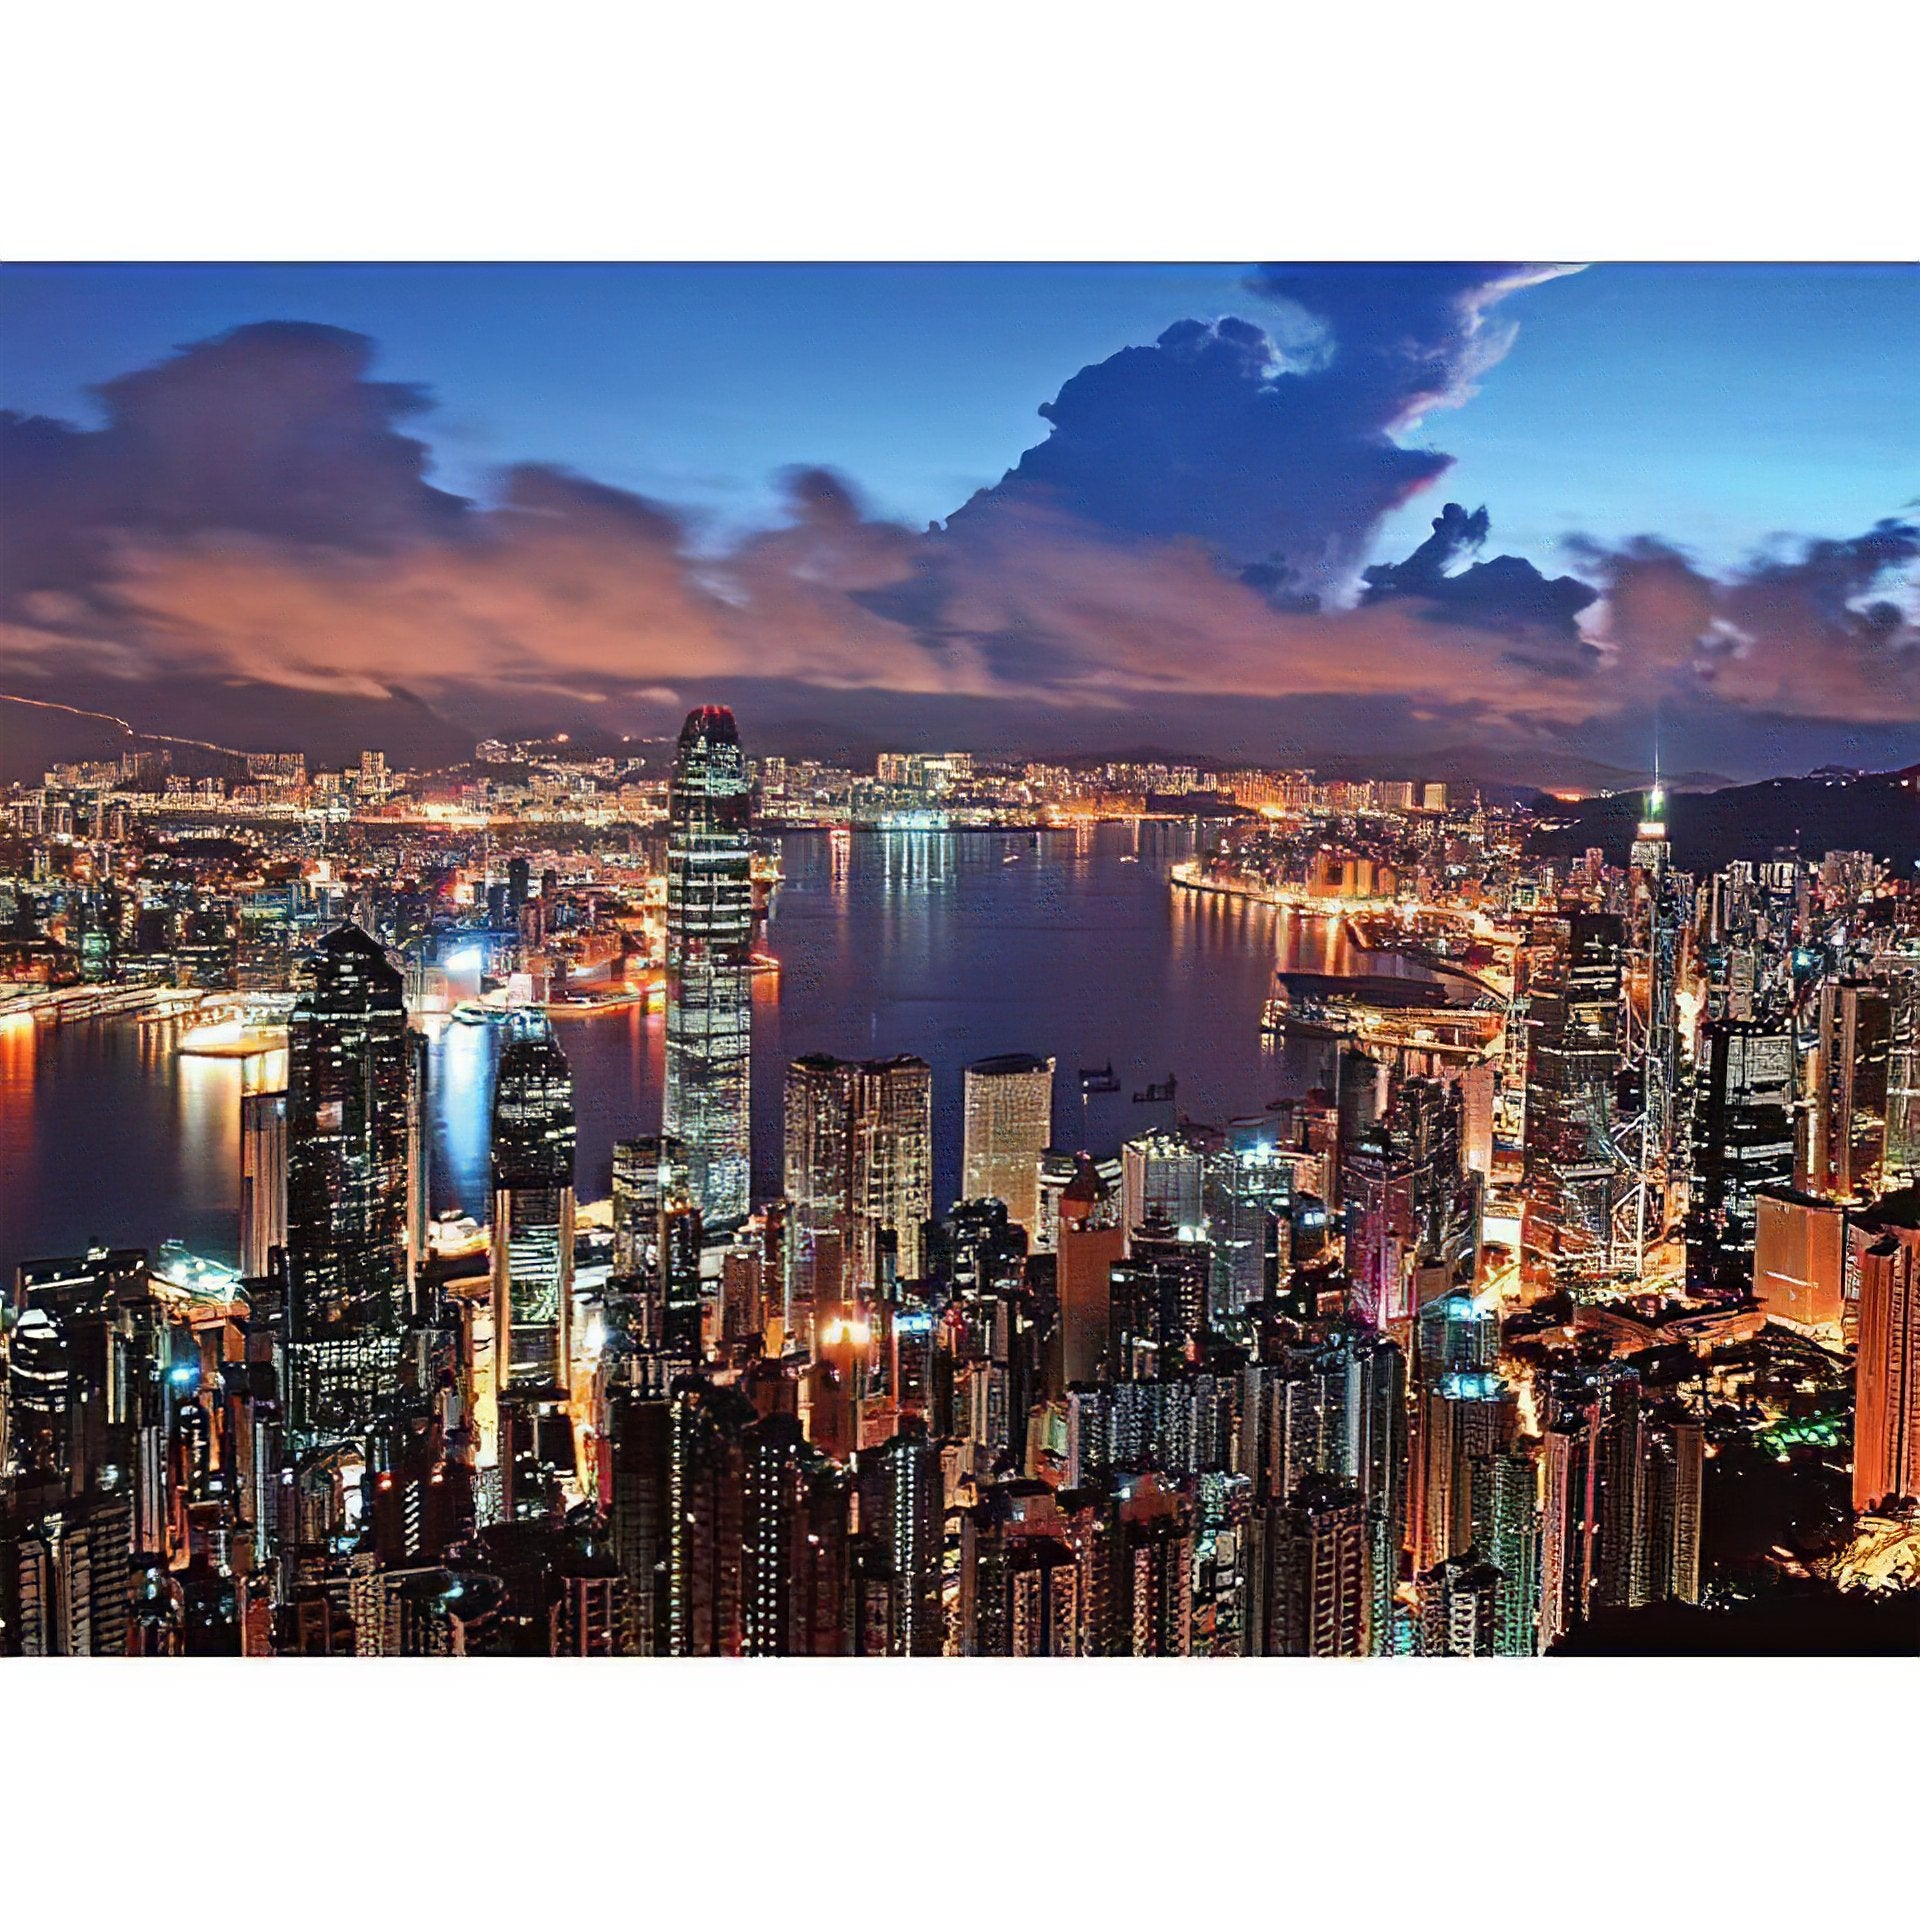 Explore the vibrant lights of Hong Kong at Night.Hong Kong At Night - Diamondartlove